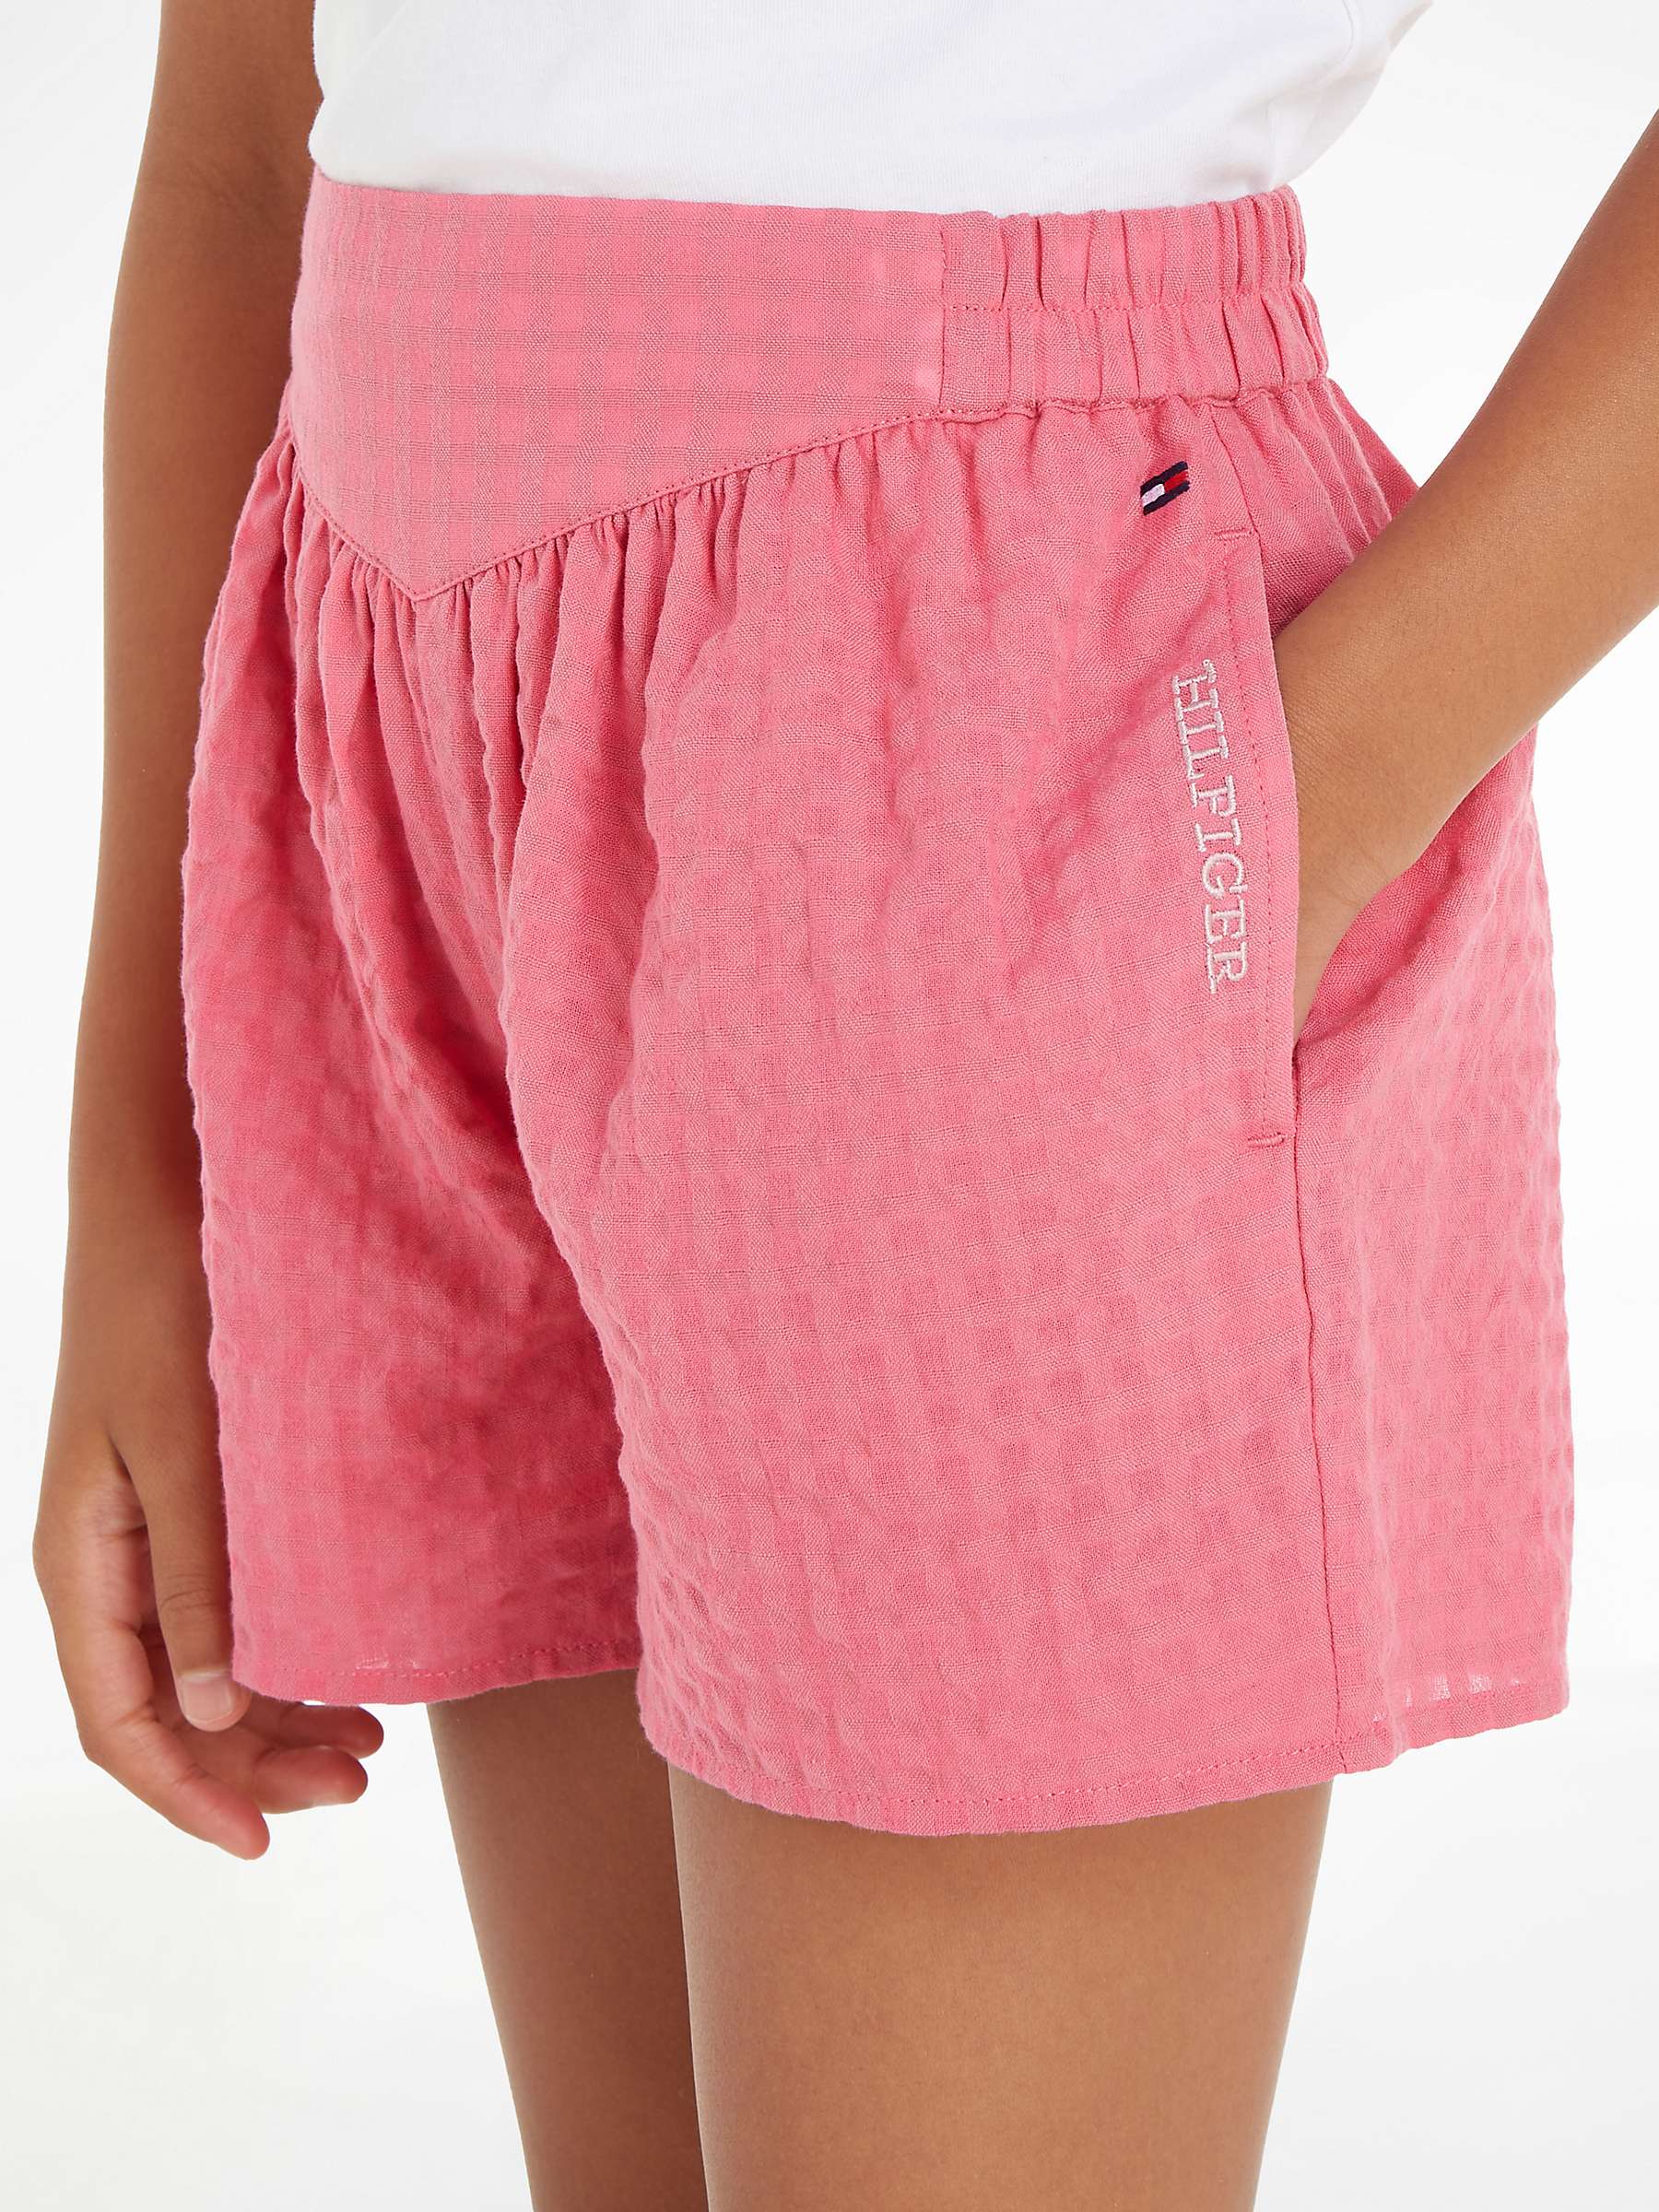 Buy Tommy Hilfiger Kids' Seersucker Gingham Shorts, Glamour Pink Online at johnlewis.com